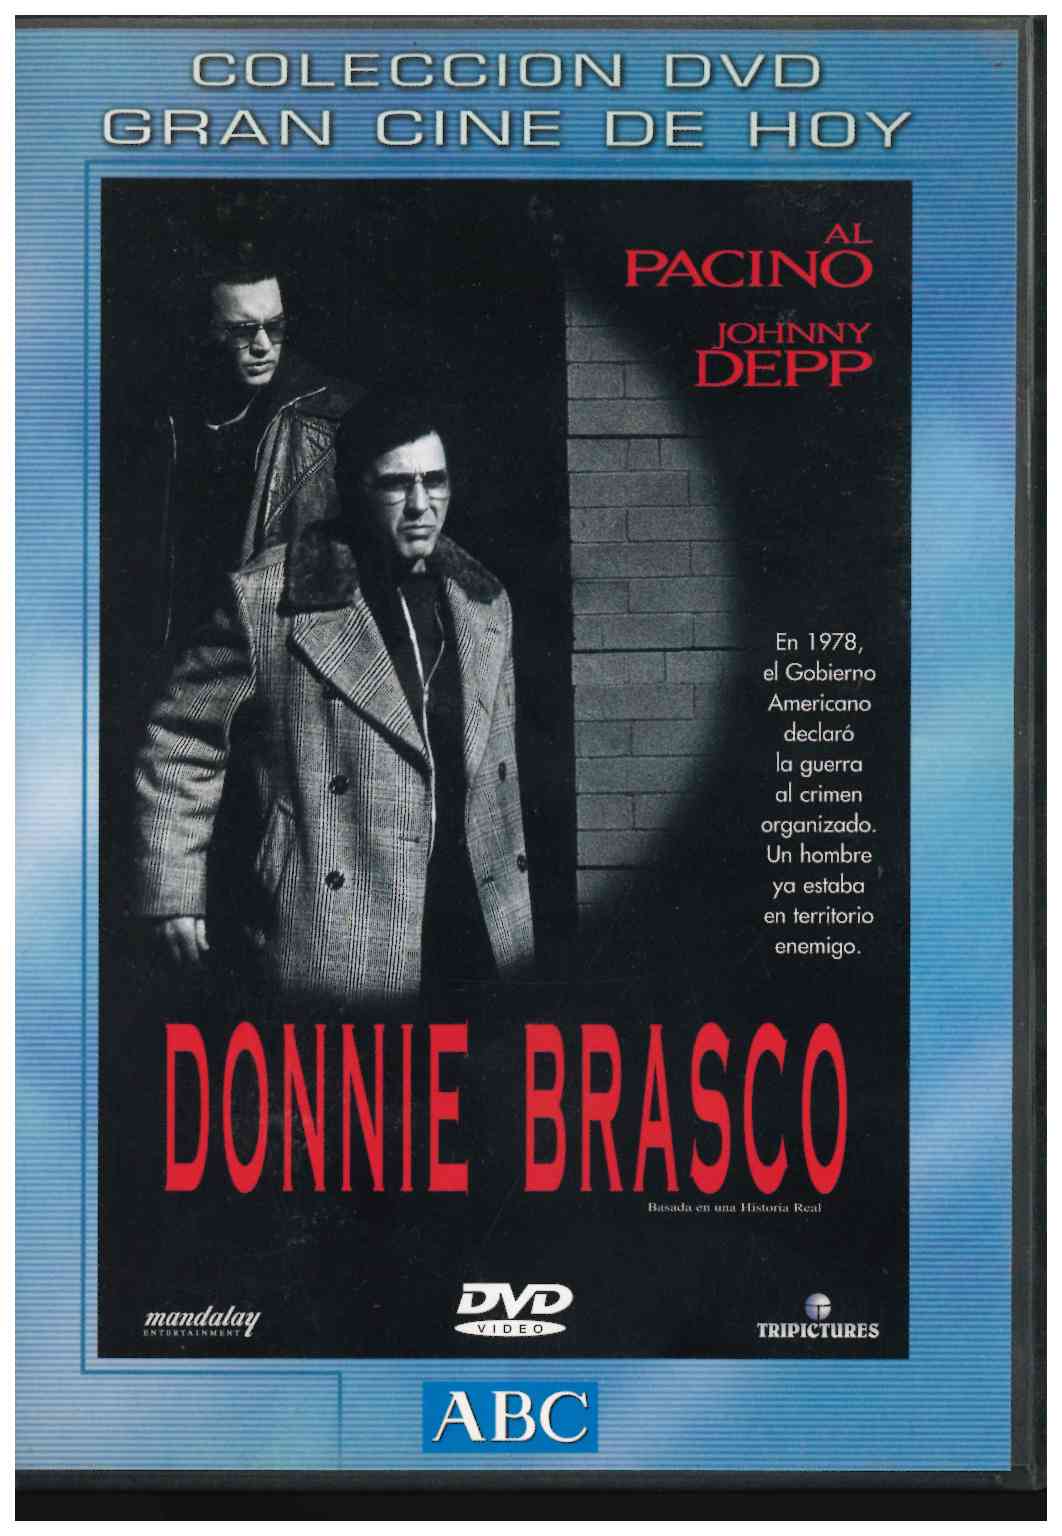 Donnie Brasco. Colección Gran Cine de hoy. Al Pacino, Johnny Depp